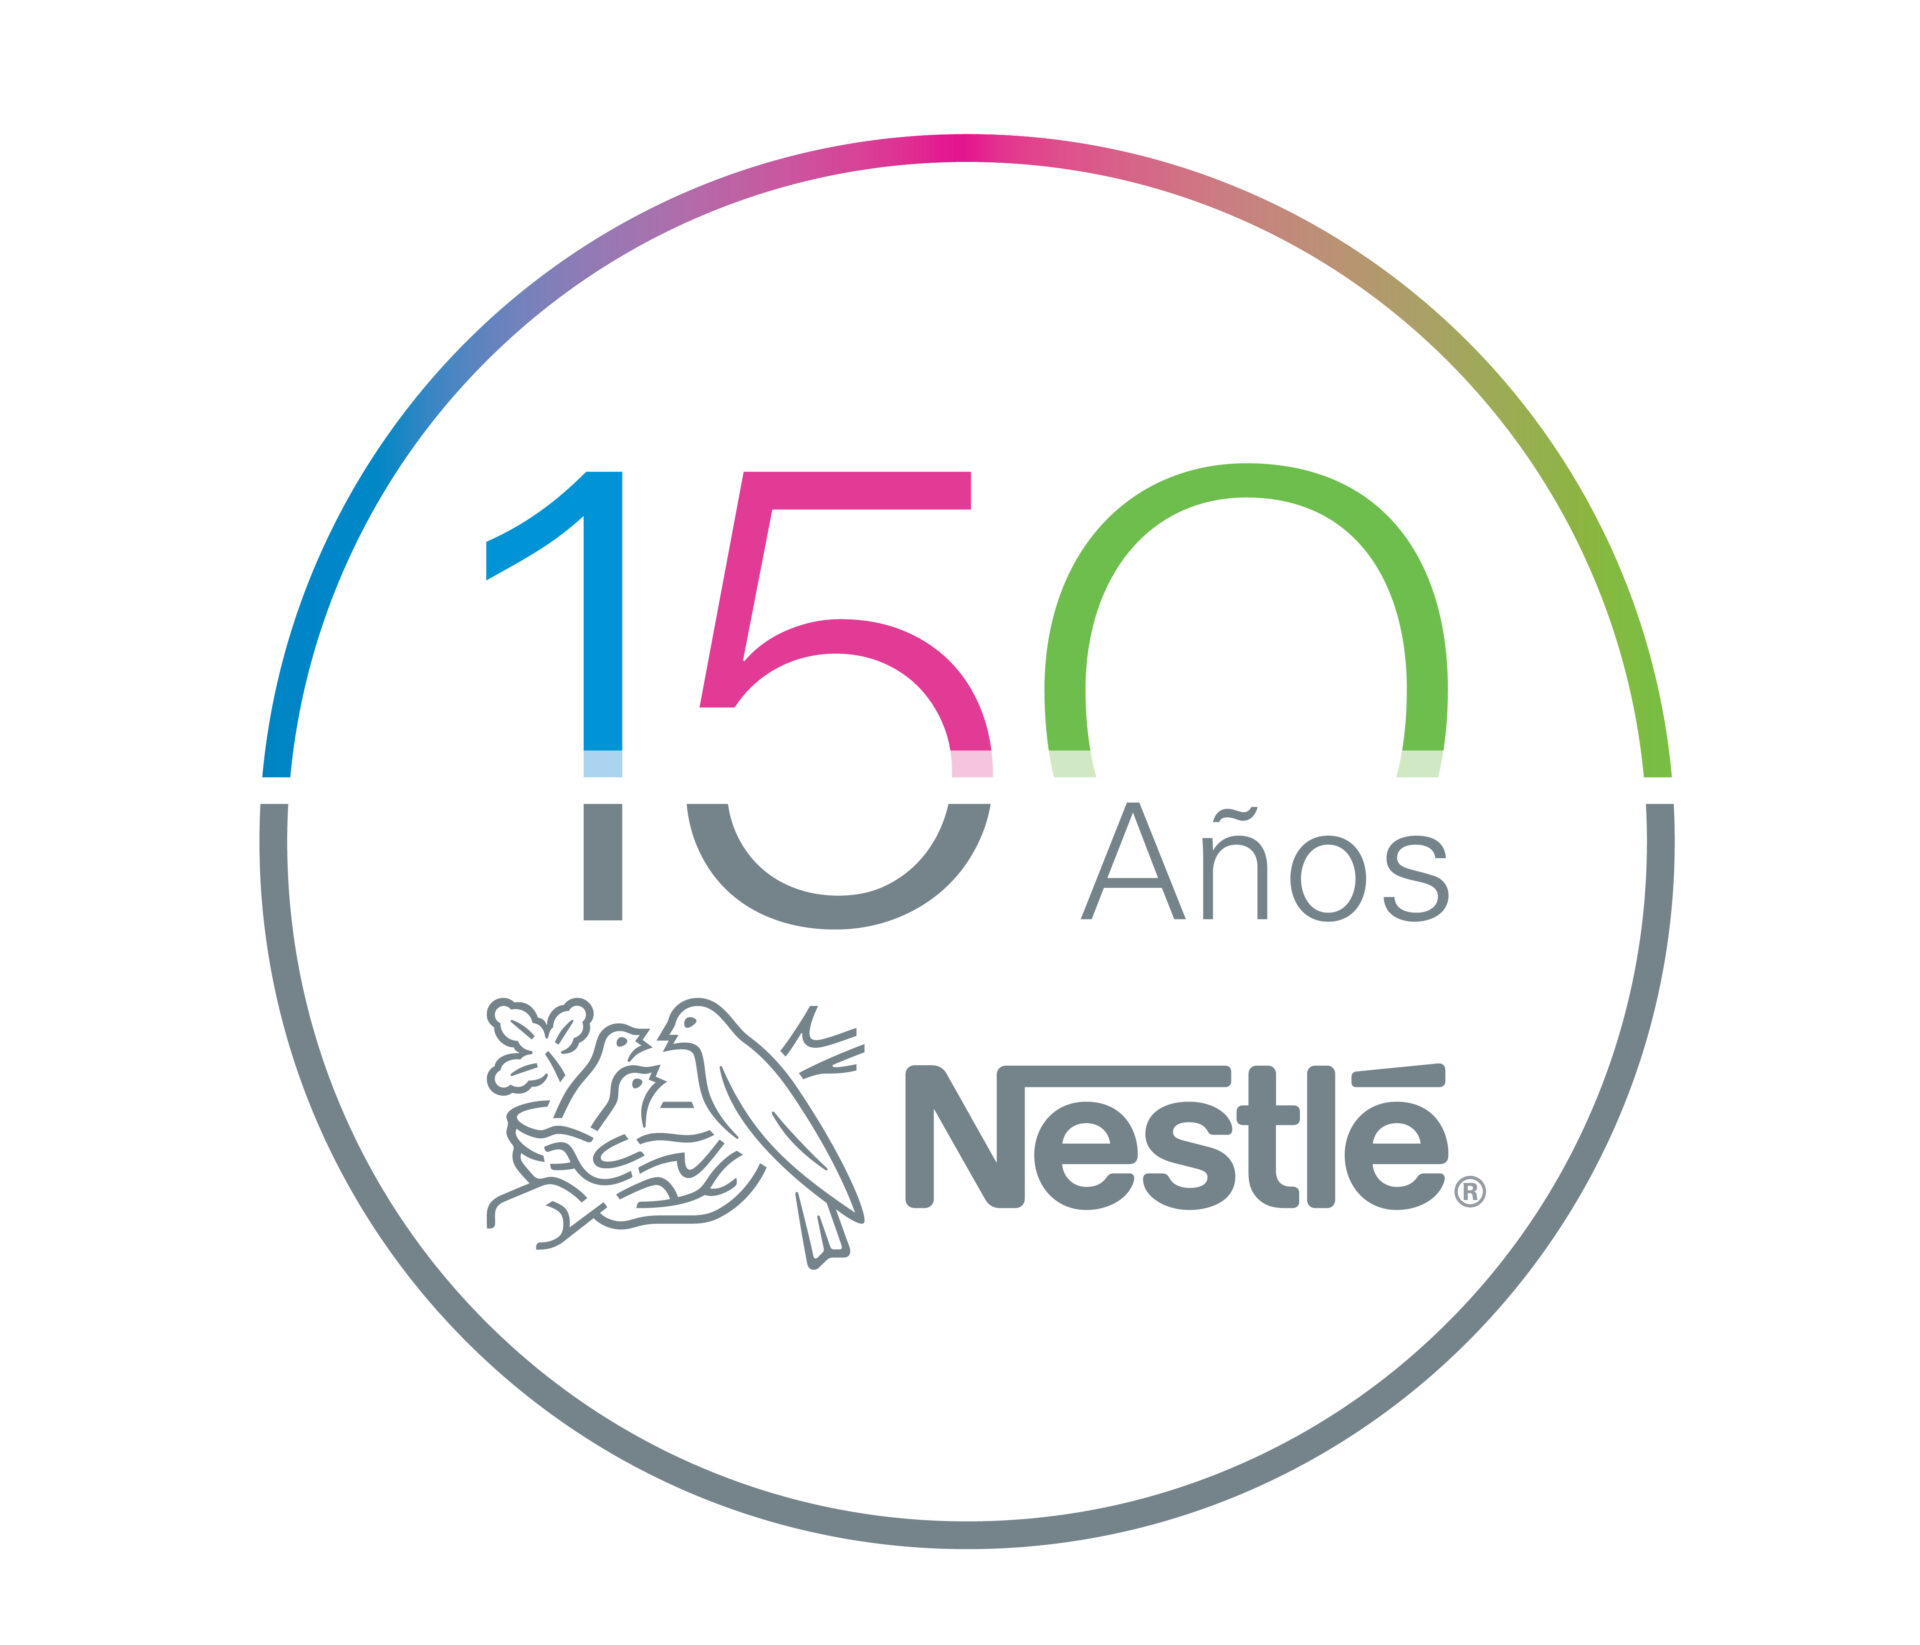 Nestlé celebra 150 años de bienestar con un gran premio para los consumidores